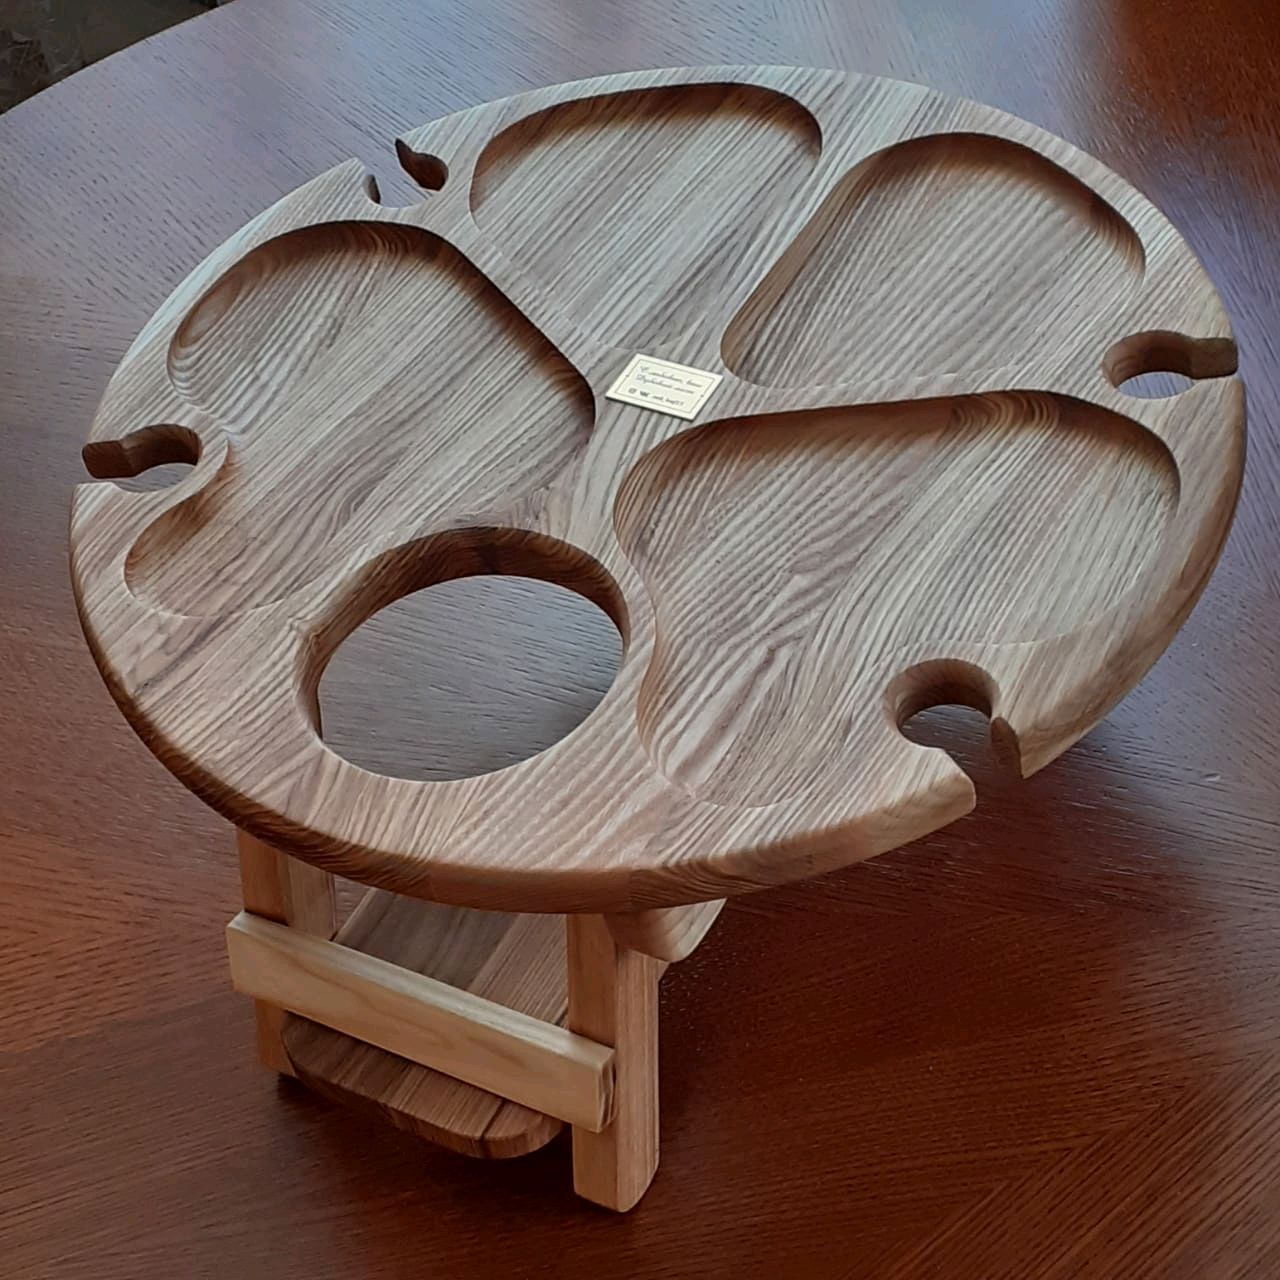 винный столик из дерева чертеж